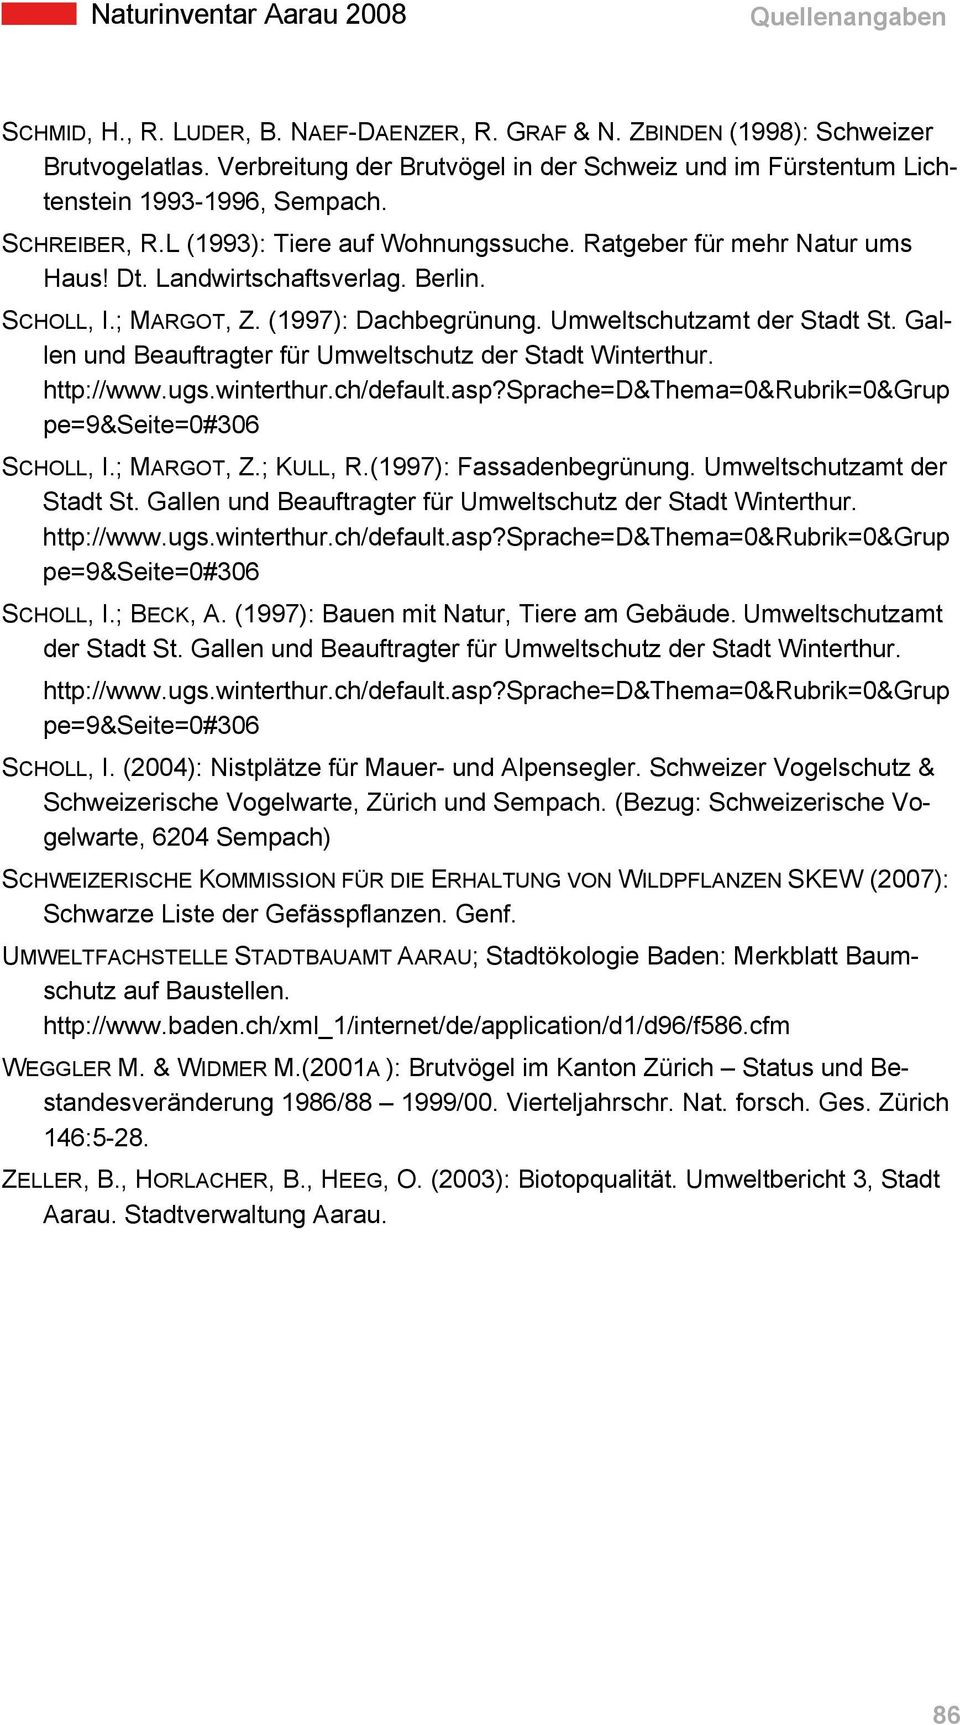 Gallen und Beauftragter für Umweltschutz der Stadt Winterthur. SCHOLL, I.; MARGOT, Z.; KULL, R.(1997): Fassadenbegrünung. Umweltschutzamt der Stadt St.